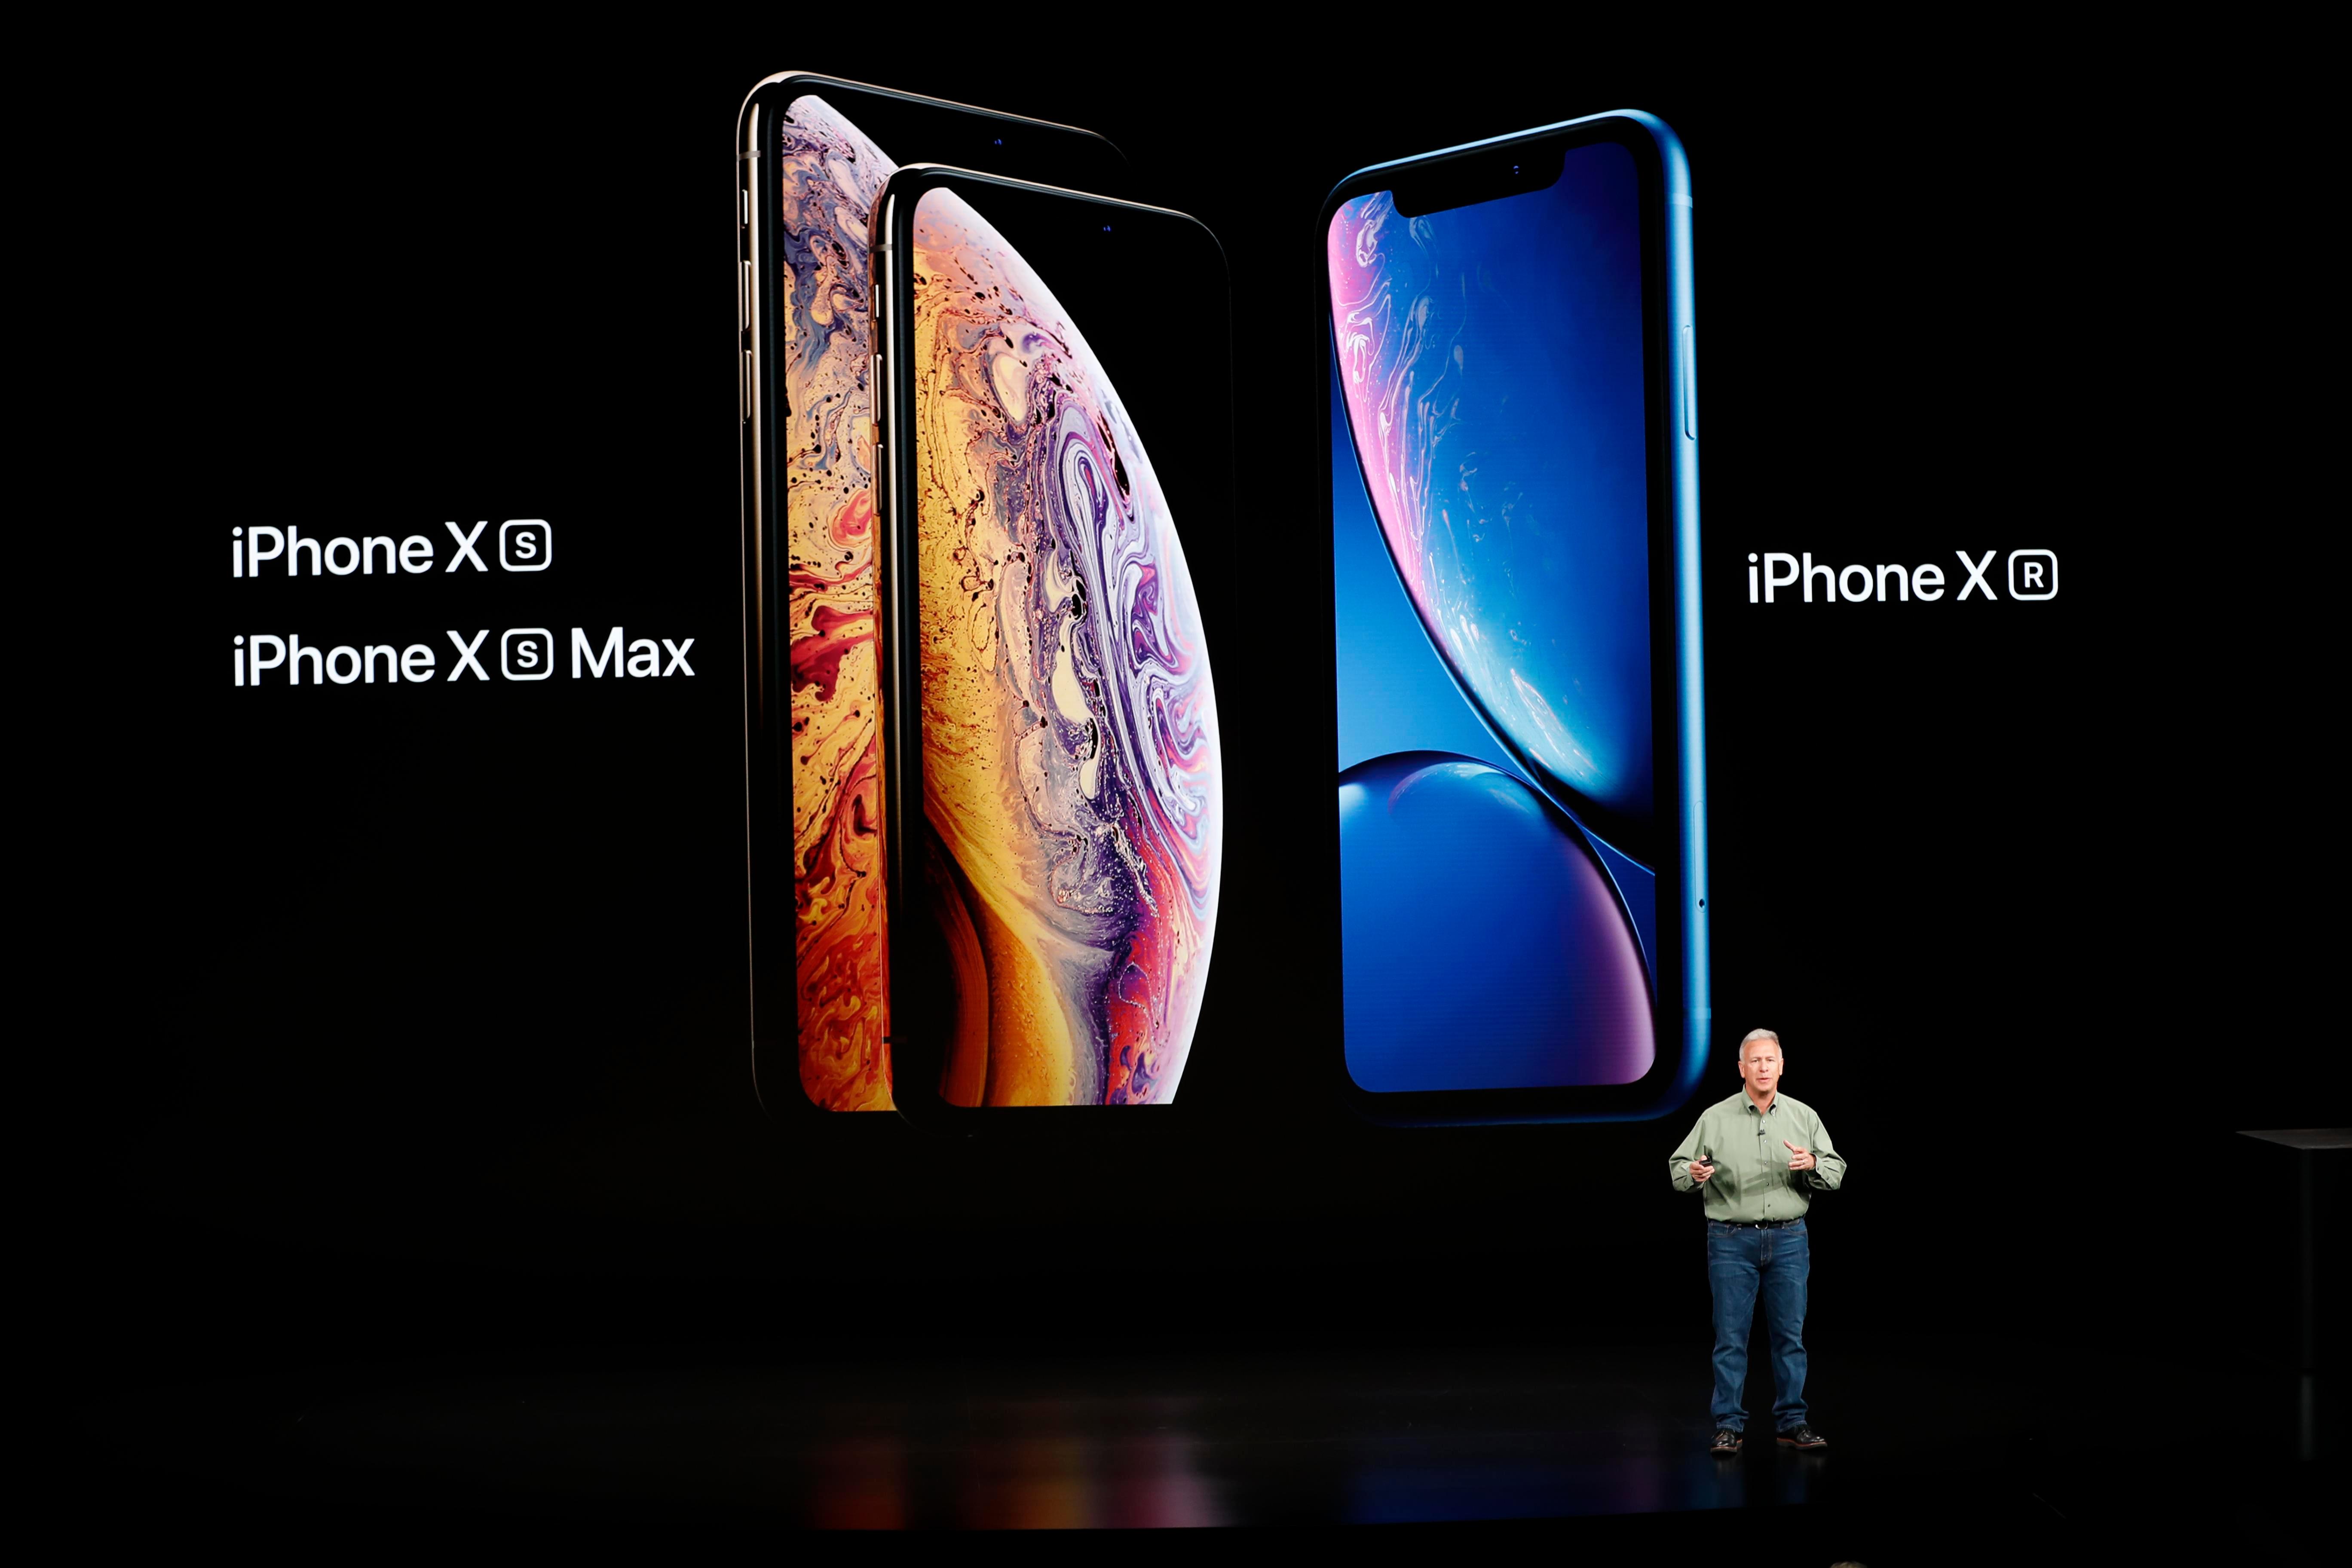   السنوات الاخيرة Apple شهد الحدث مقدمة من ثلاثة نماذج جديدة iPhone